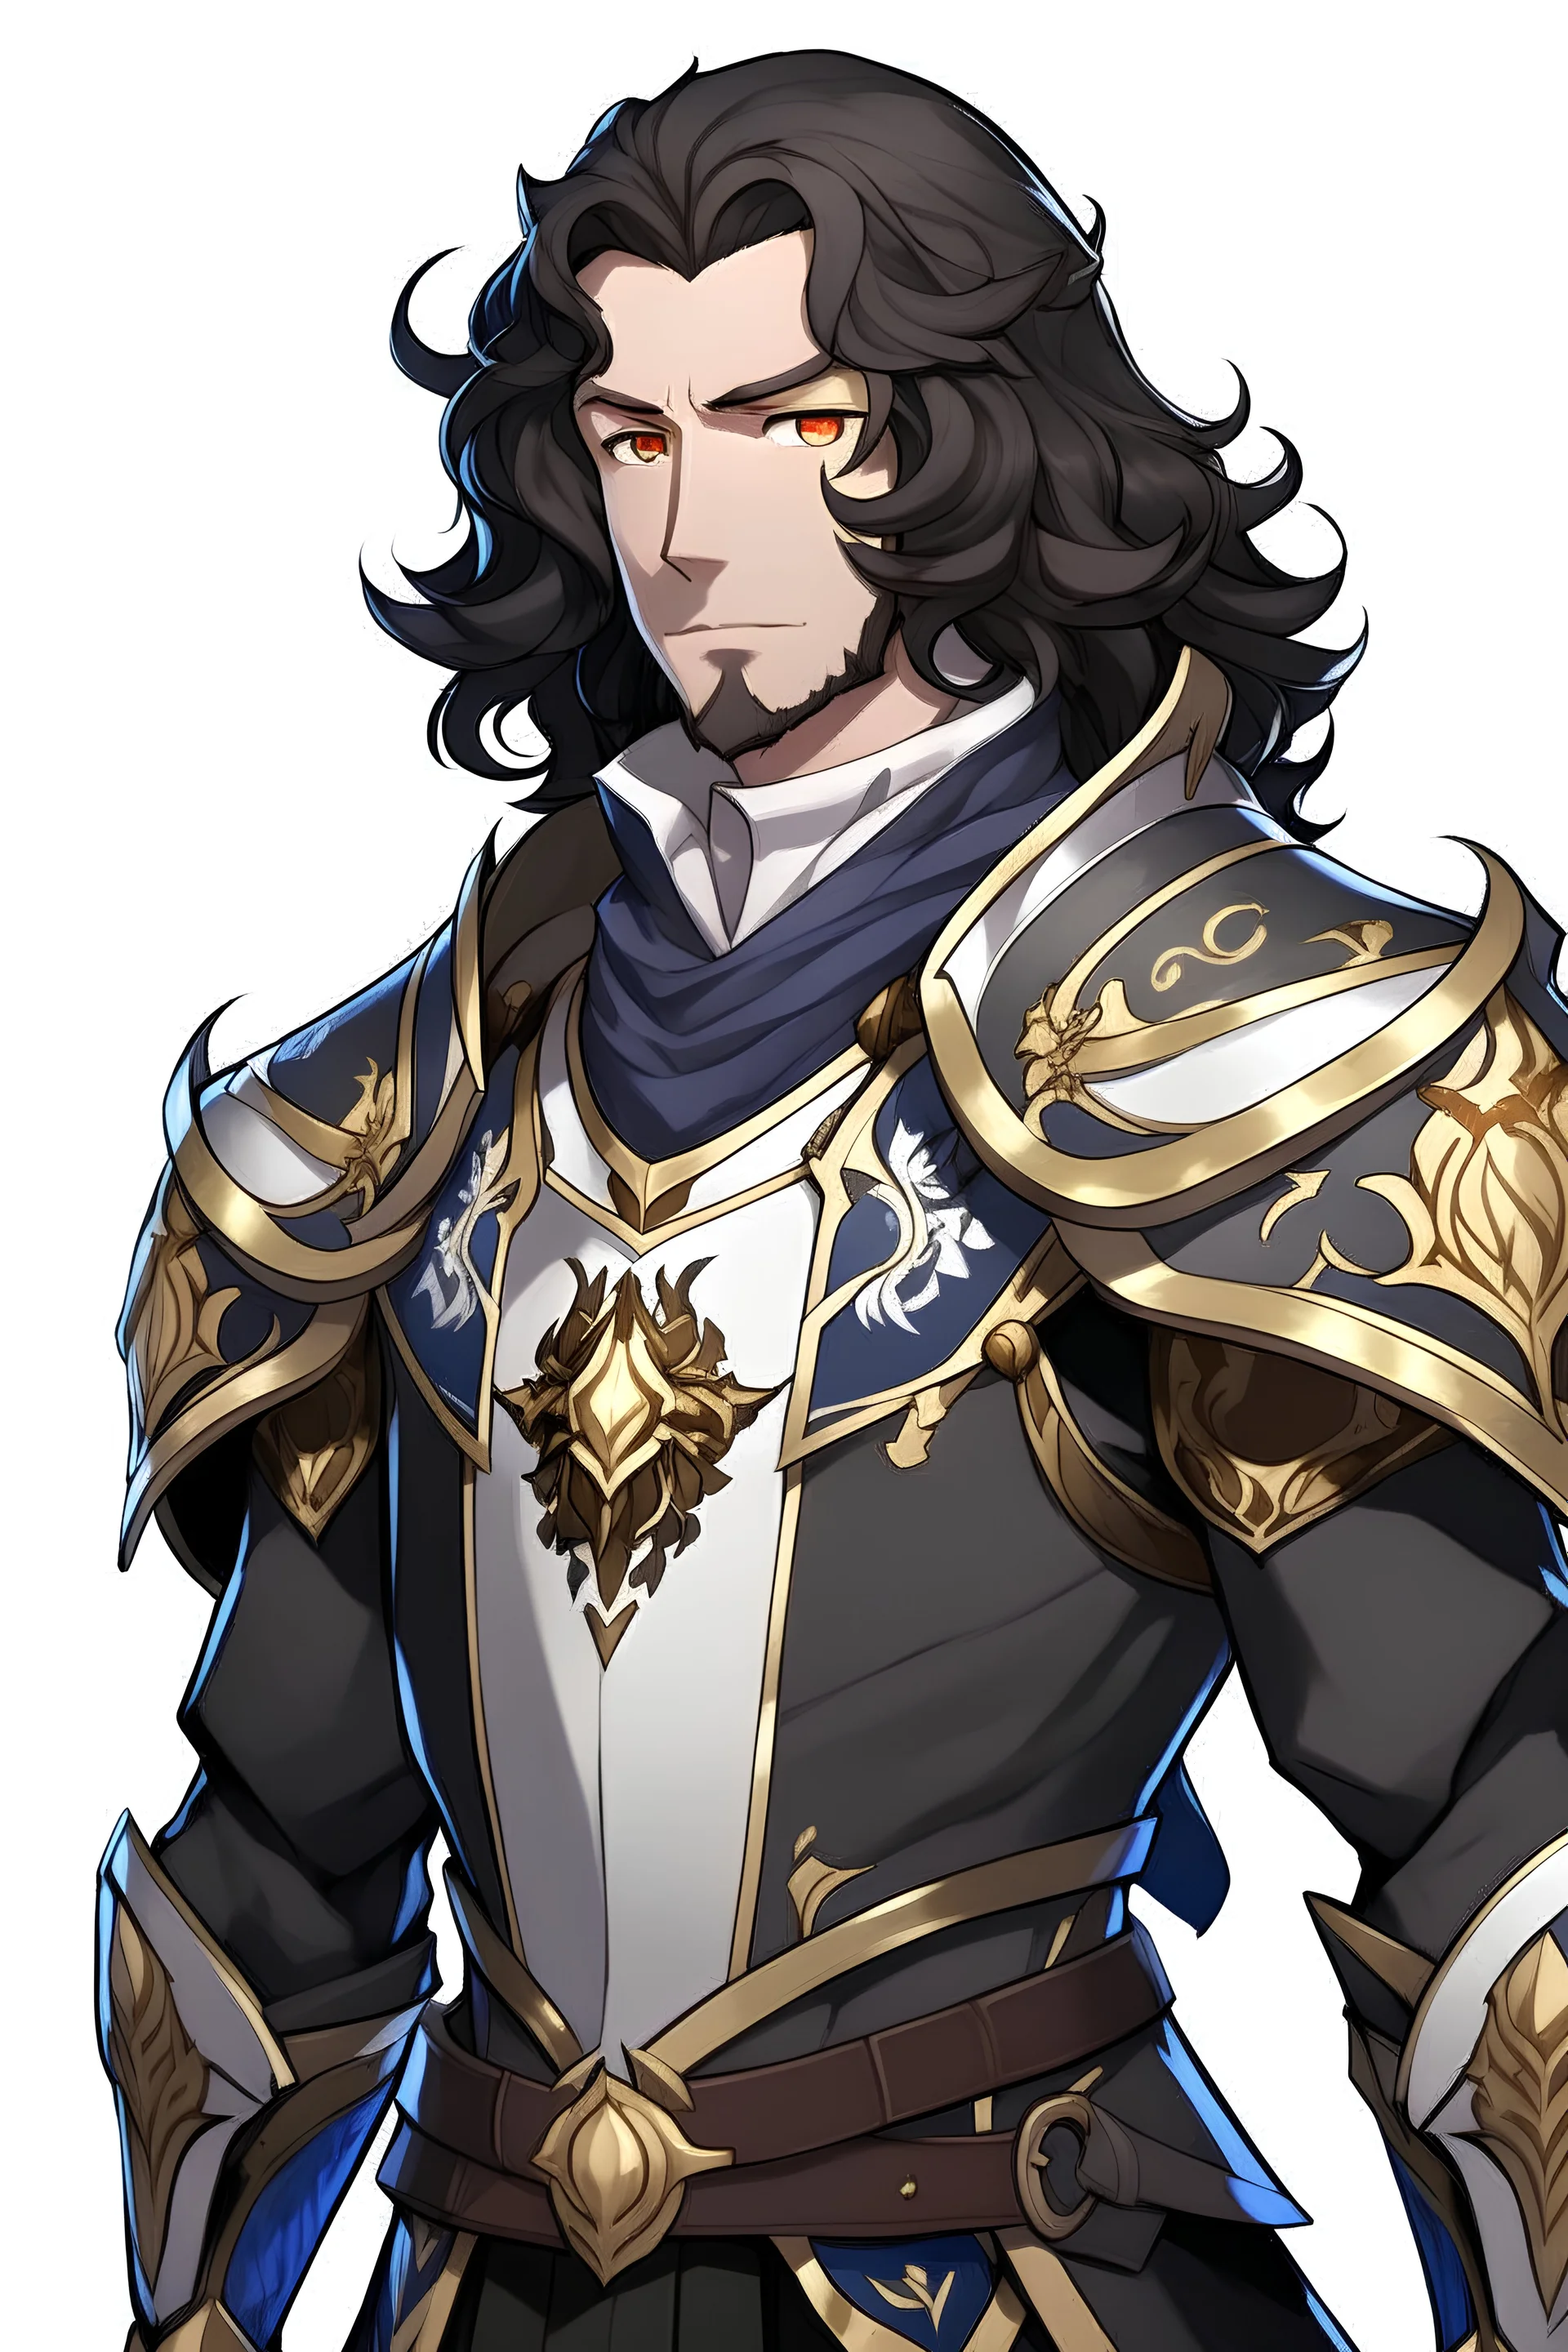 мужчина из геншина с очень кудрявыми длинными темными волосами в полный рост стоящий в броне